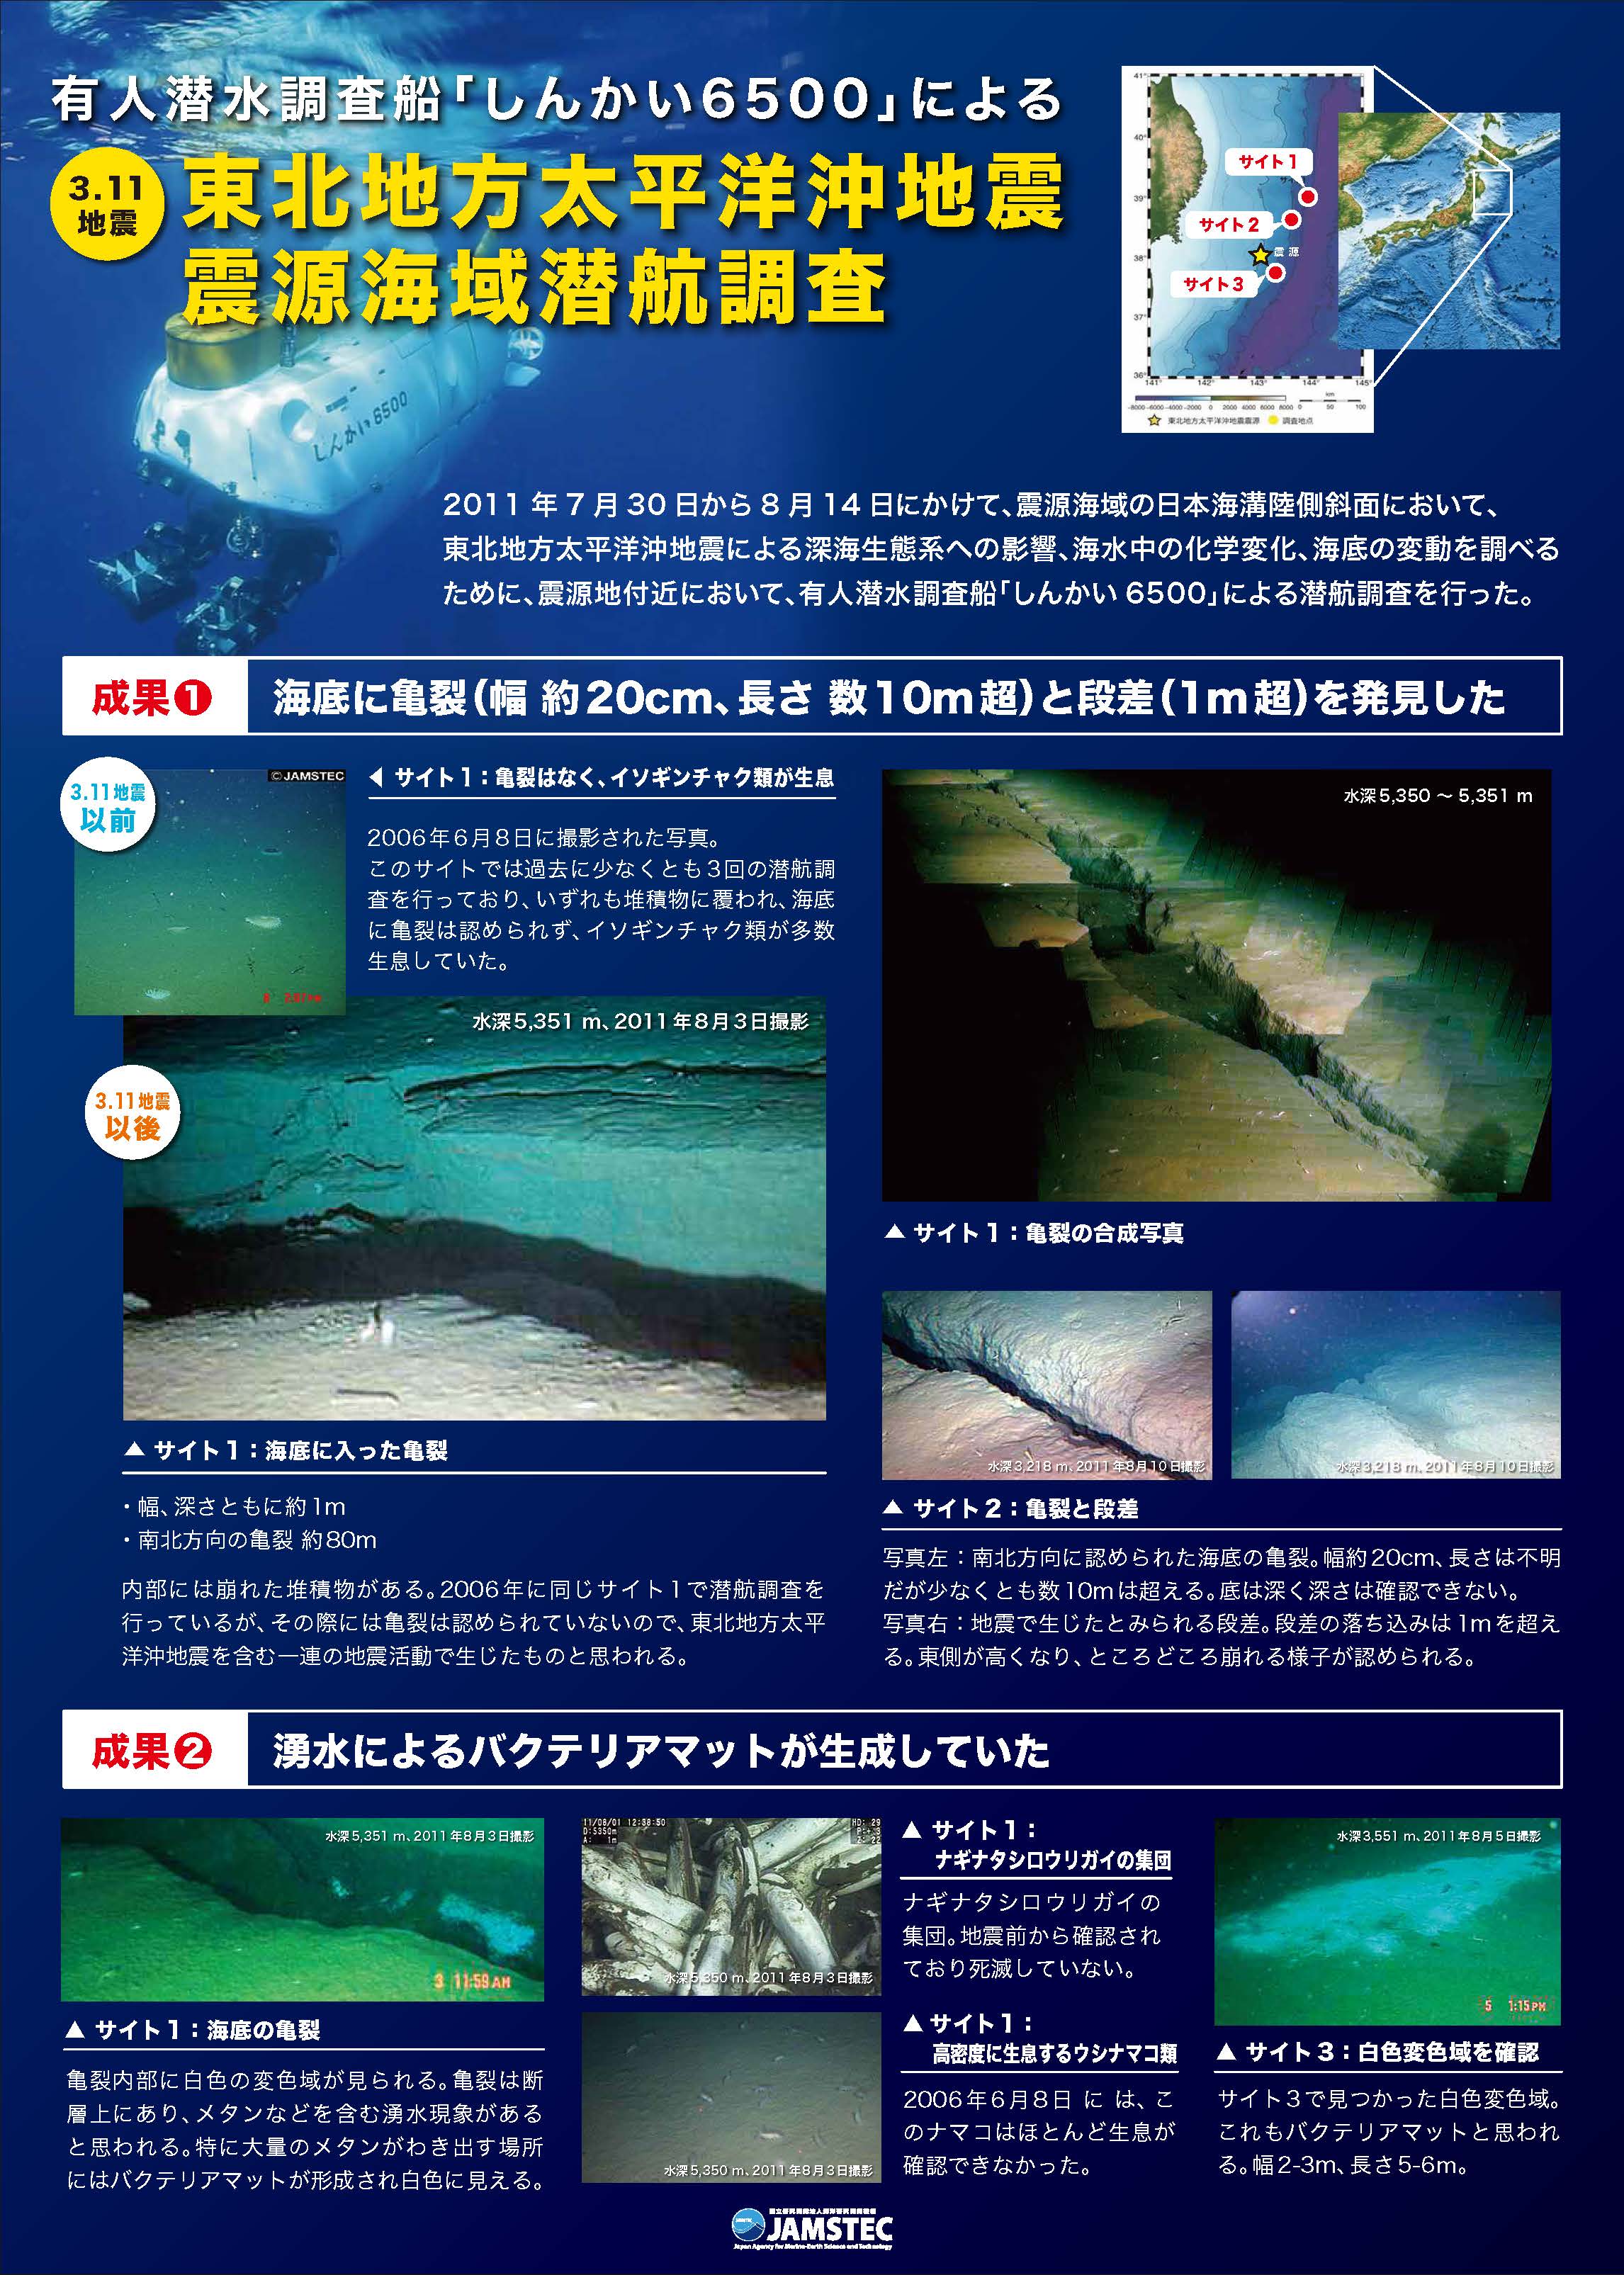 「しんかい6500」東北地方太平洋沖地震震源海域潜航調査